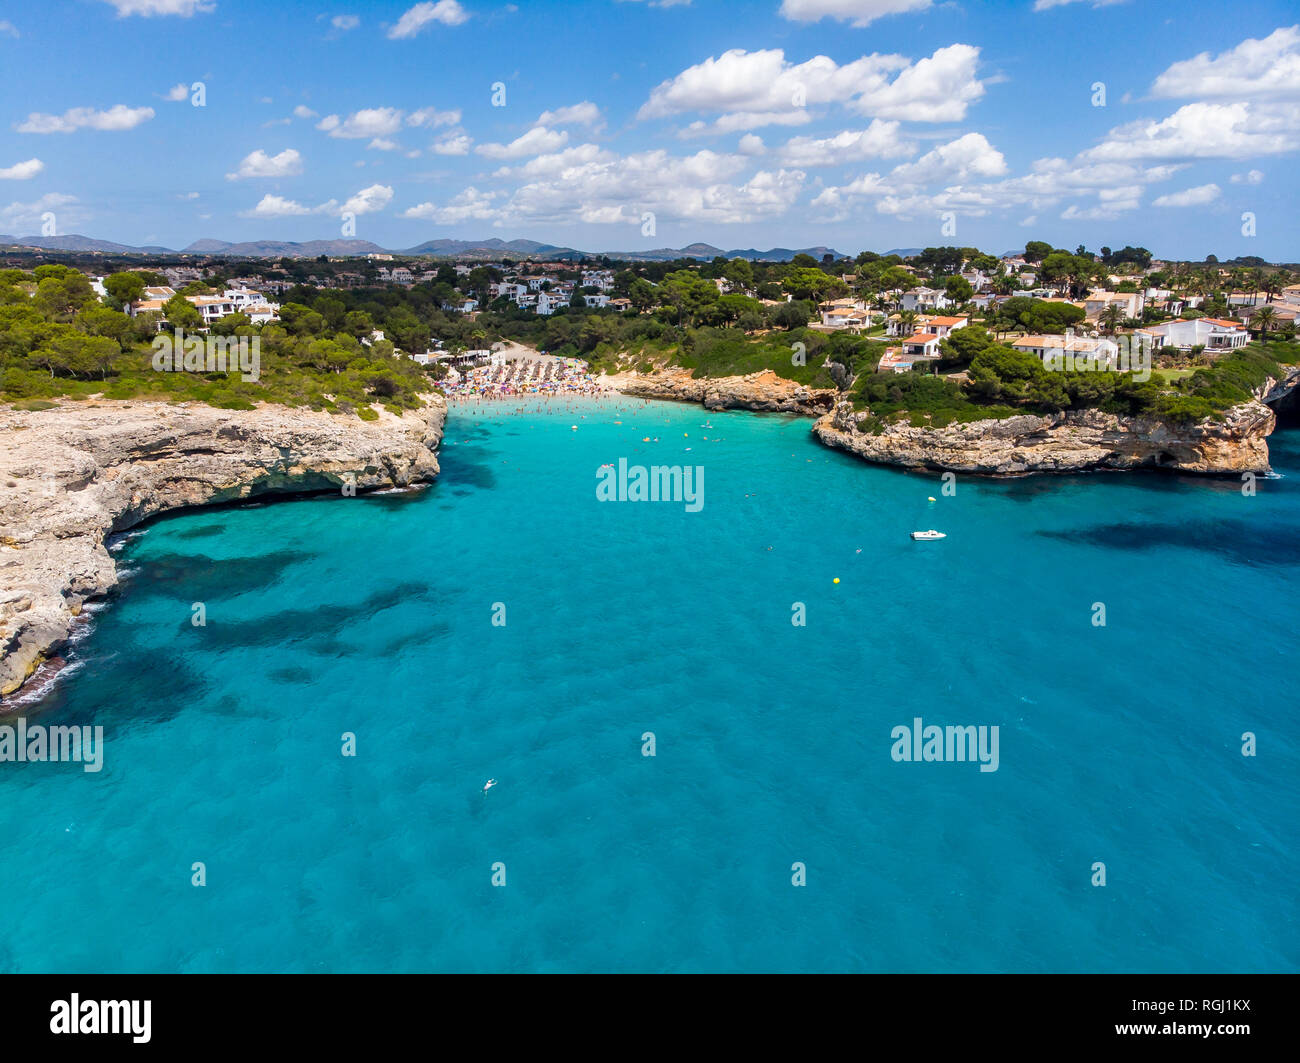 Spagna, Baleares, Mallorca, Porto Cristo Novo, veduta aerea di Cala Mendia, porto naturale Foto Stock